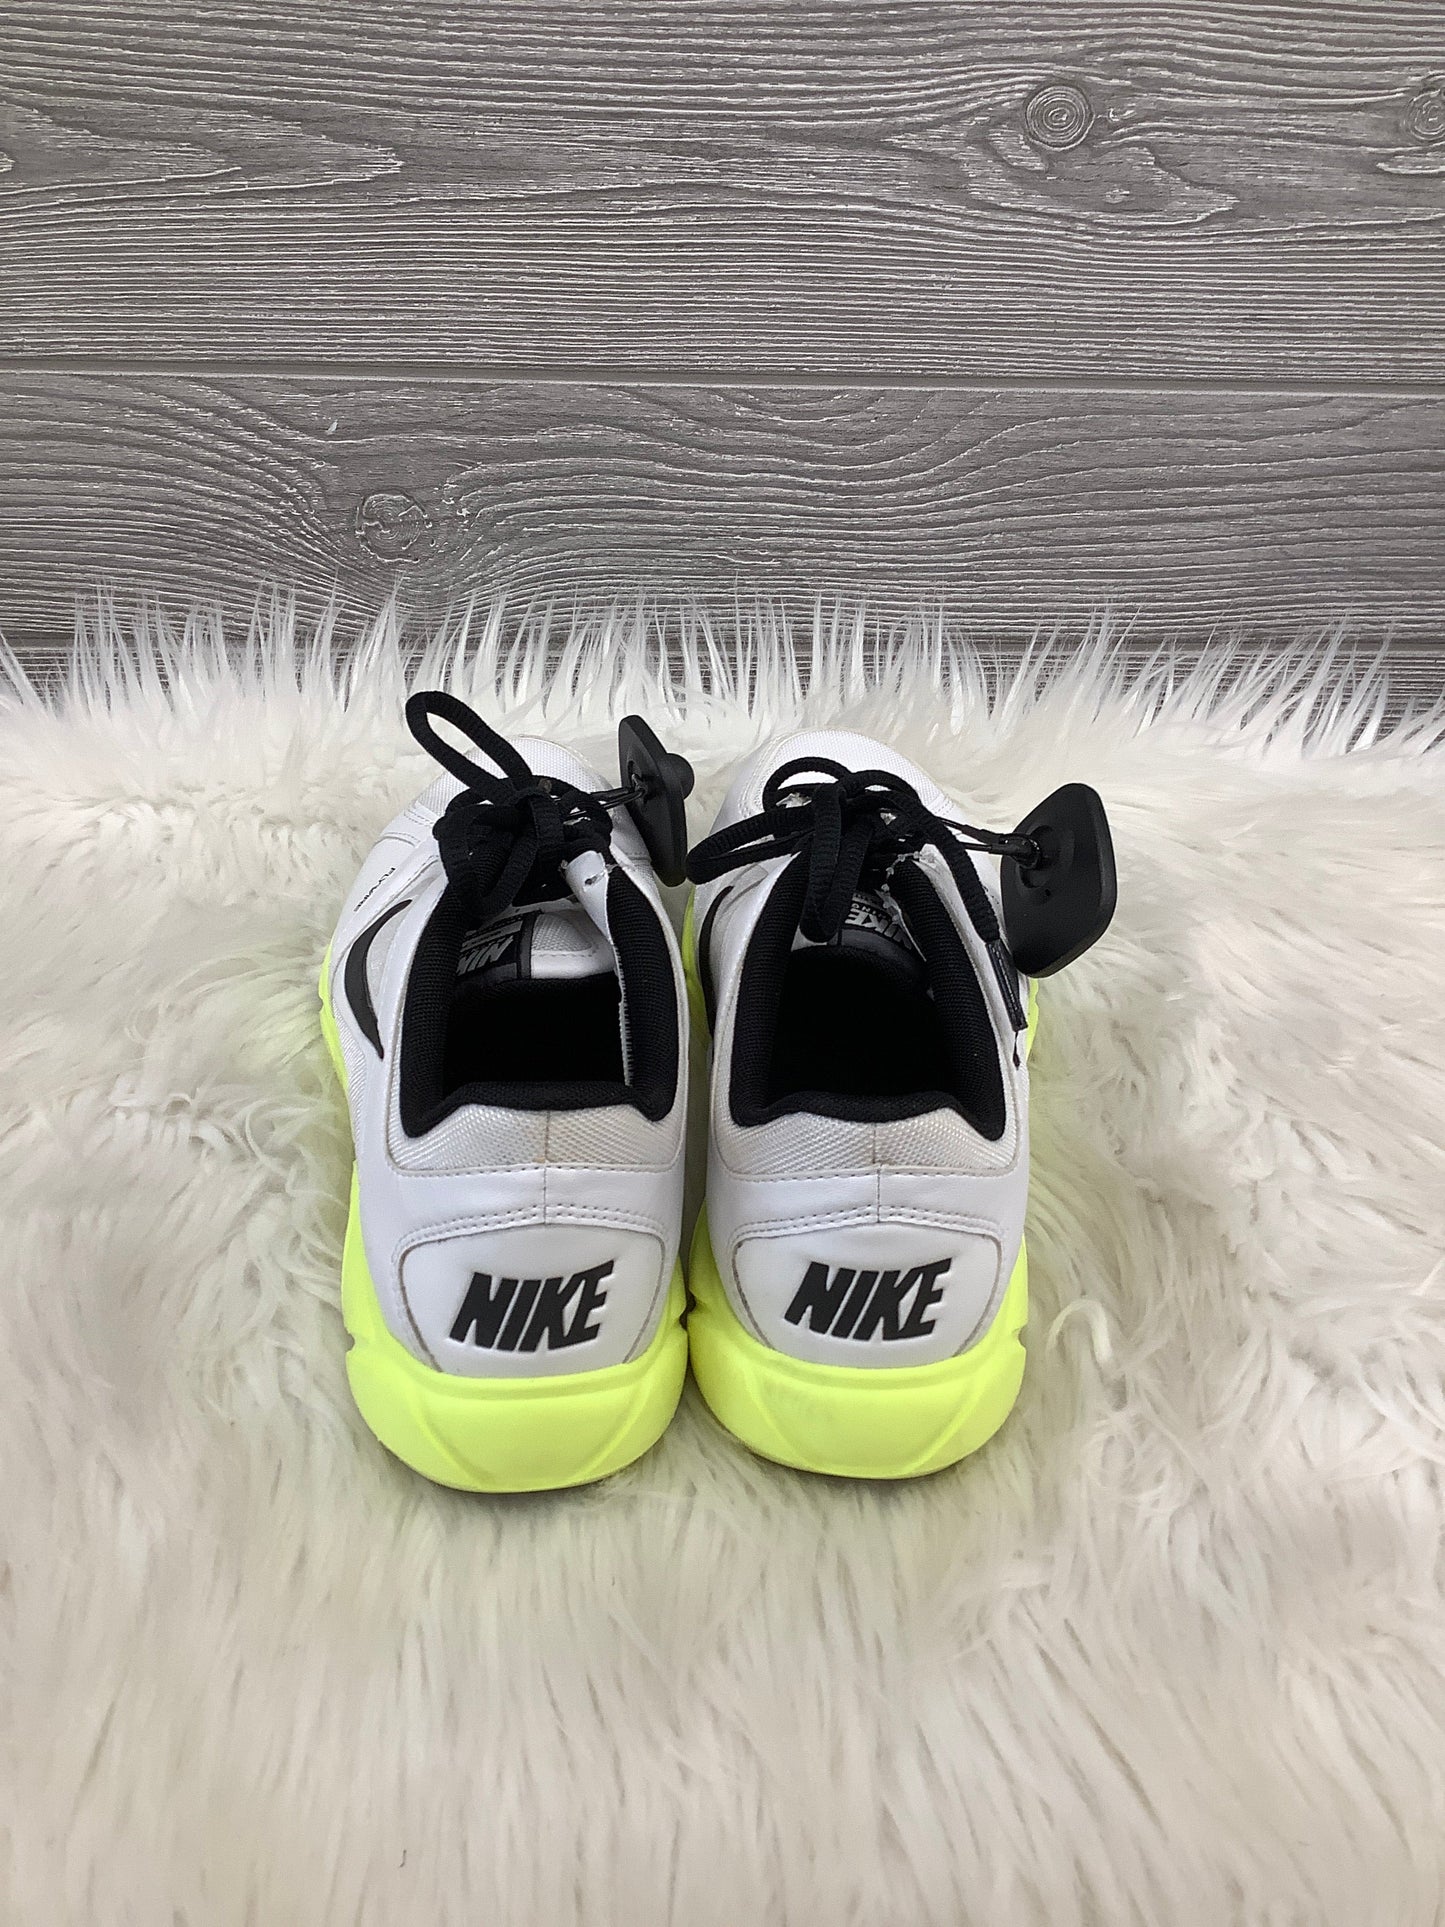 White Shoes Athletic Nike, Size 6.5